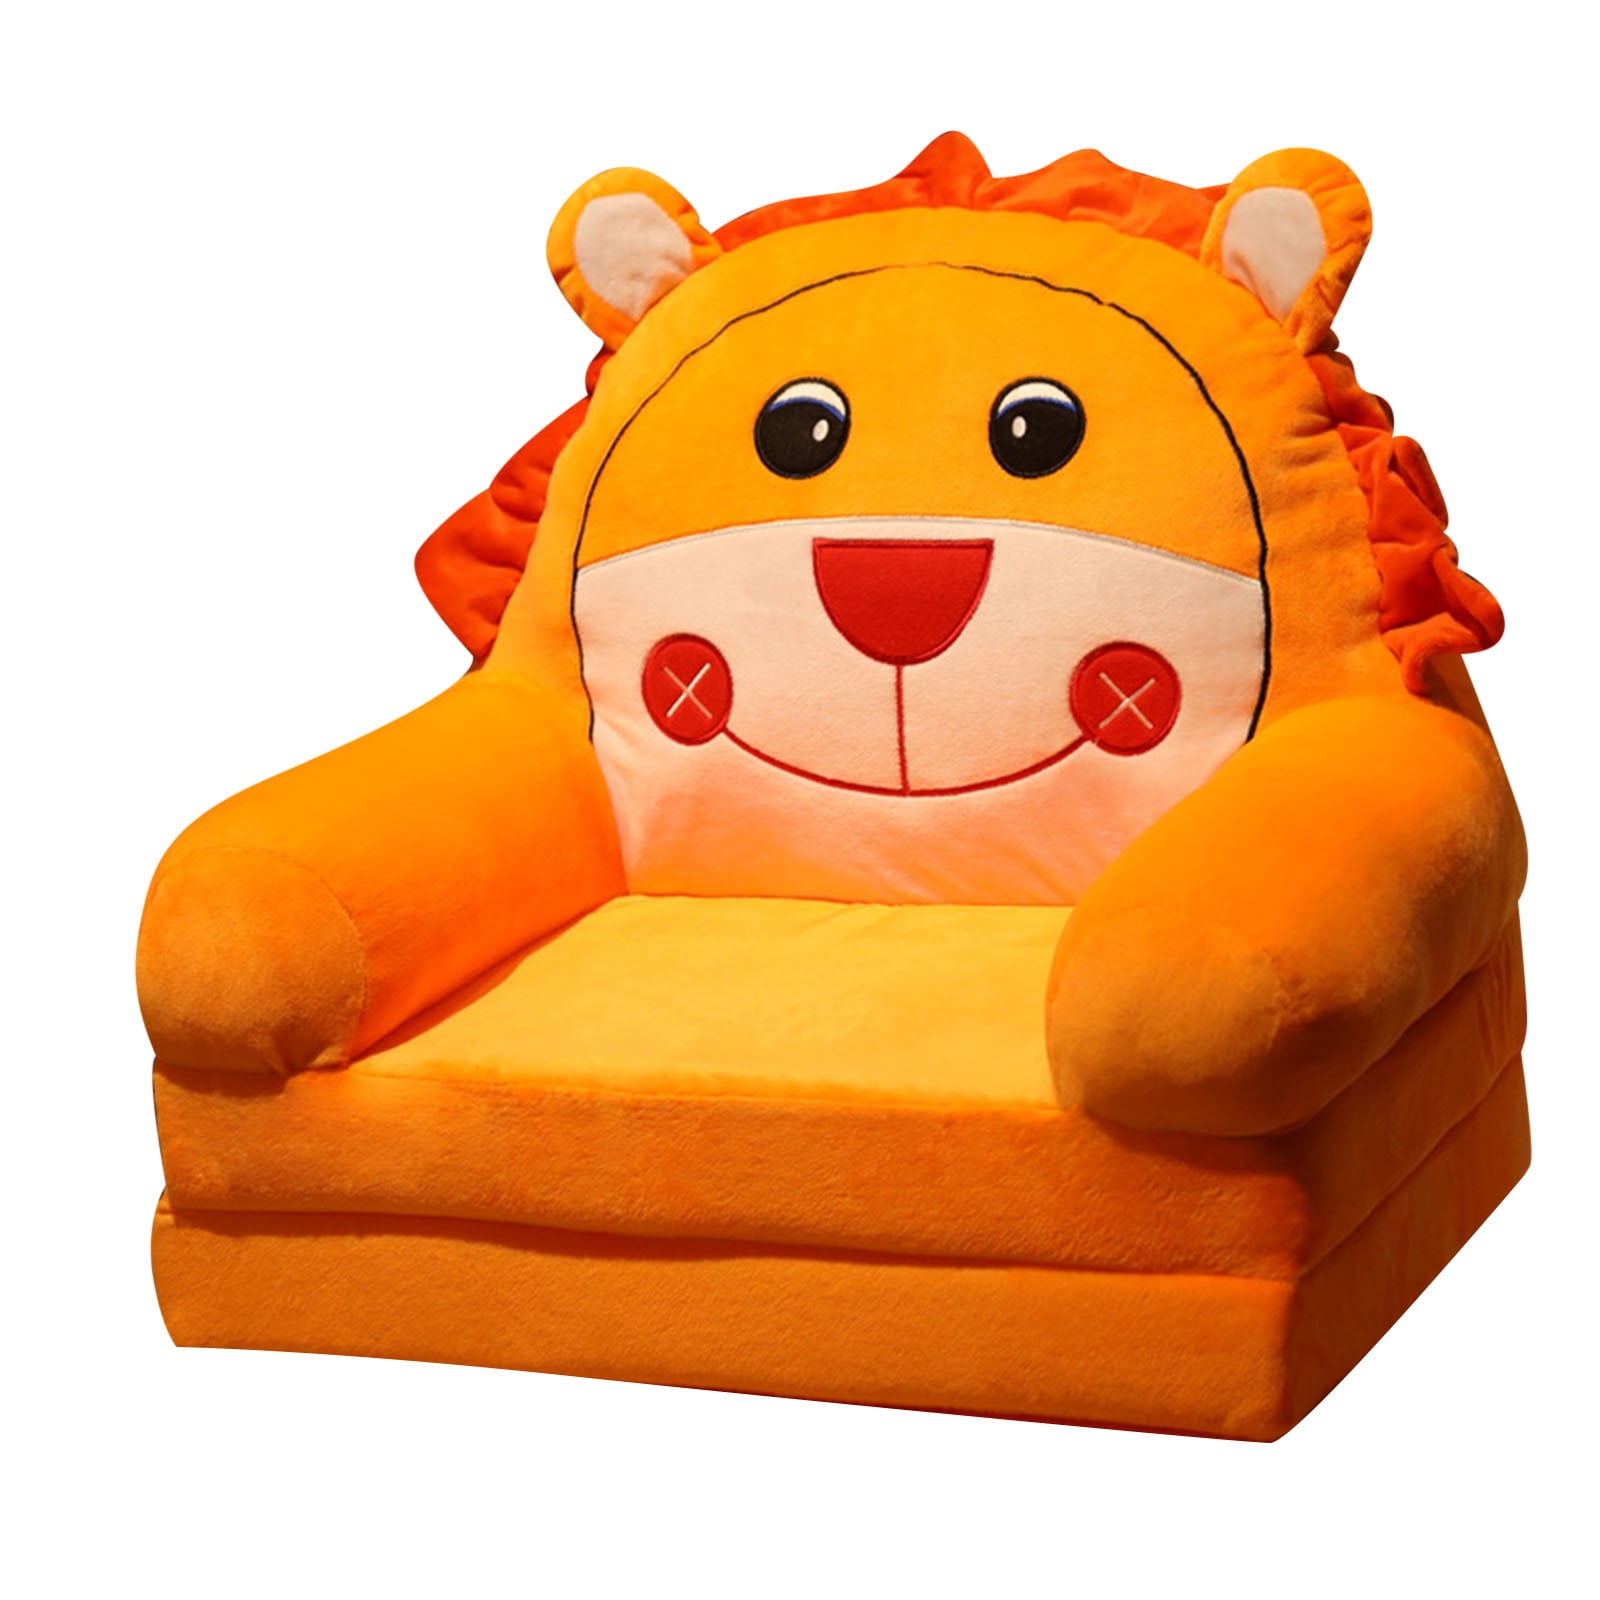 naioewe Cushion Chair, Comfy Cartoon Plush Seat Cushion, Floor Pillow Floor  Cushions, Cute Office Chair Cushion Room Decor, GN1 